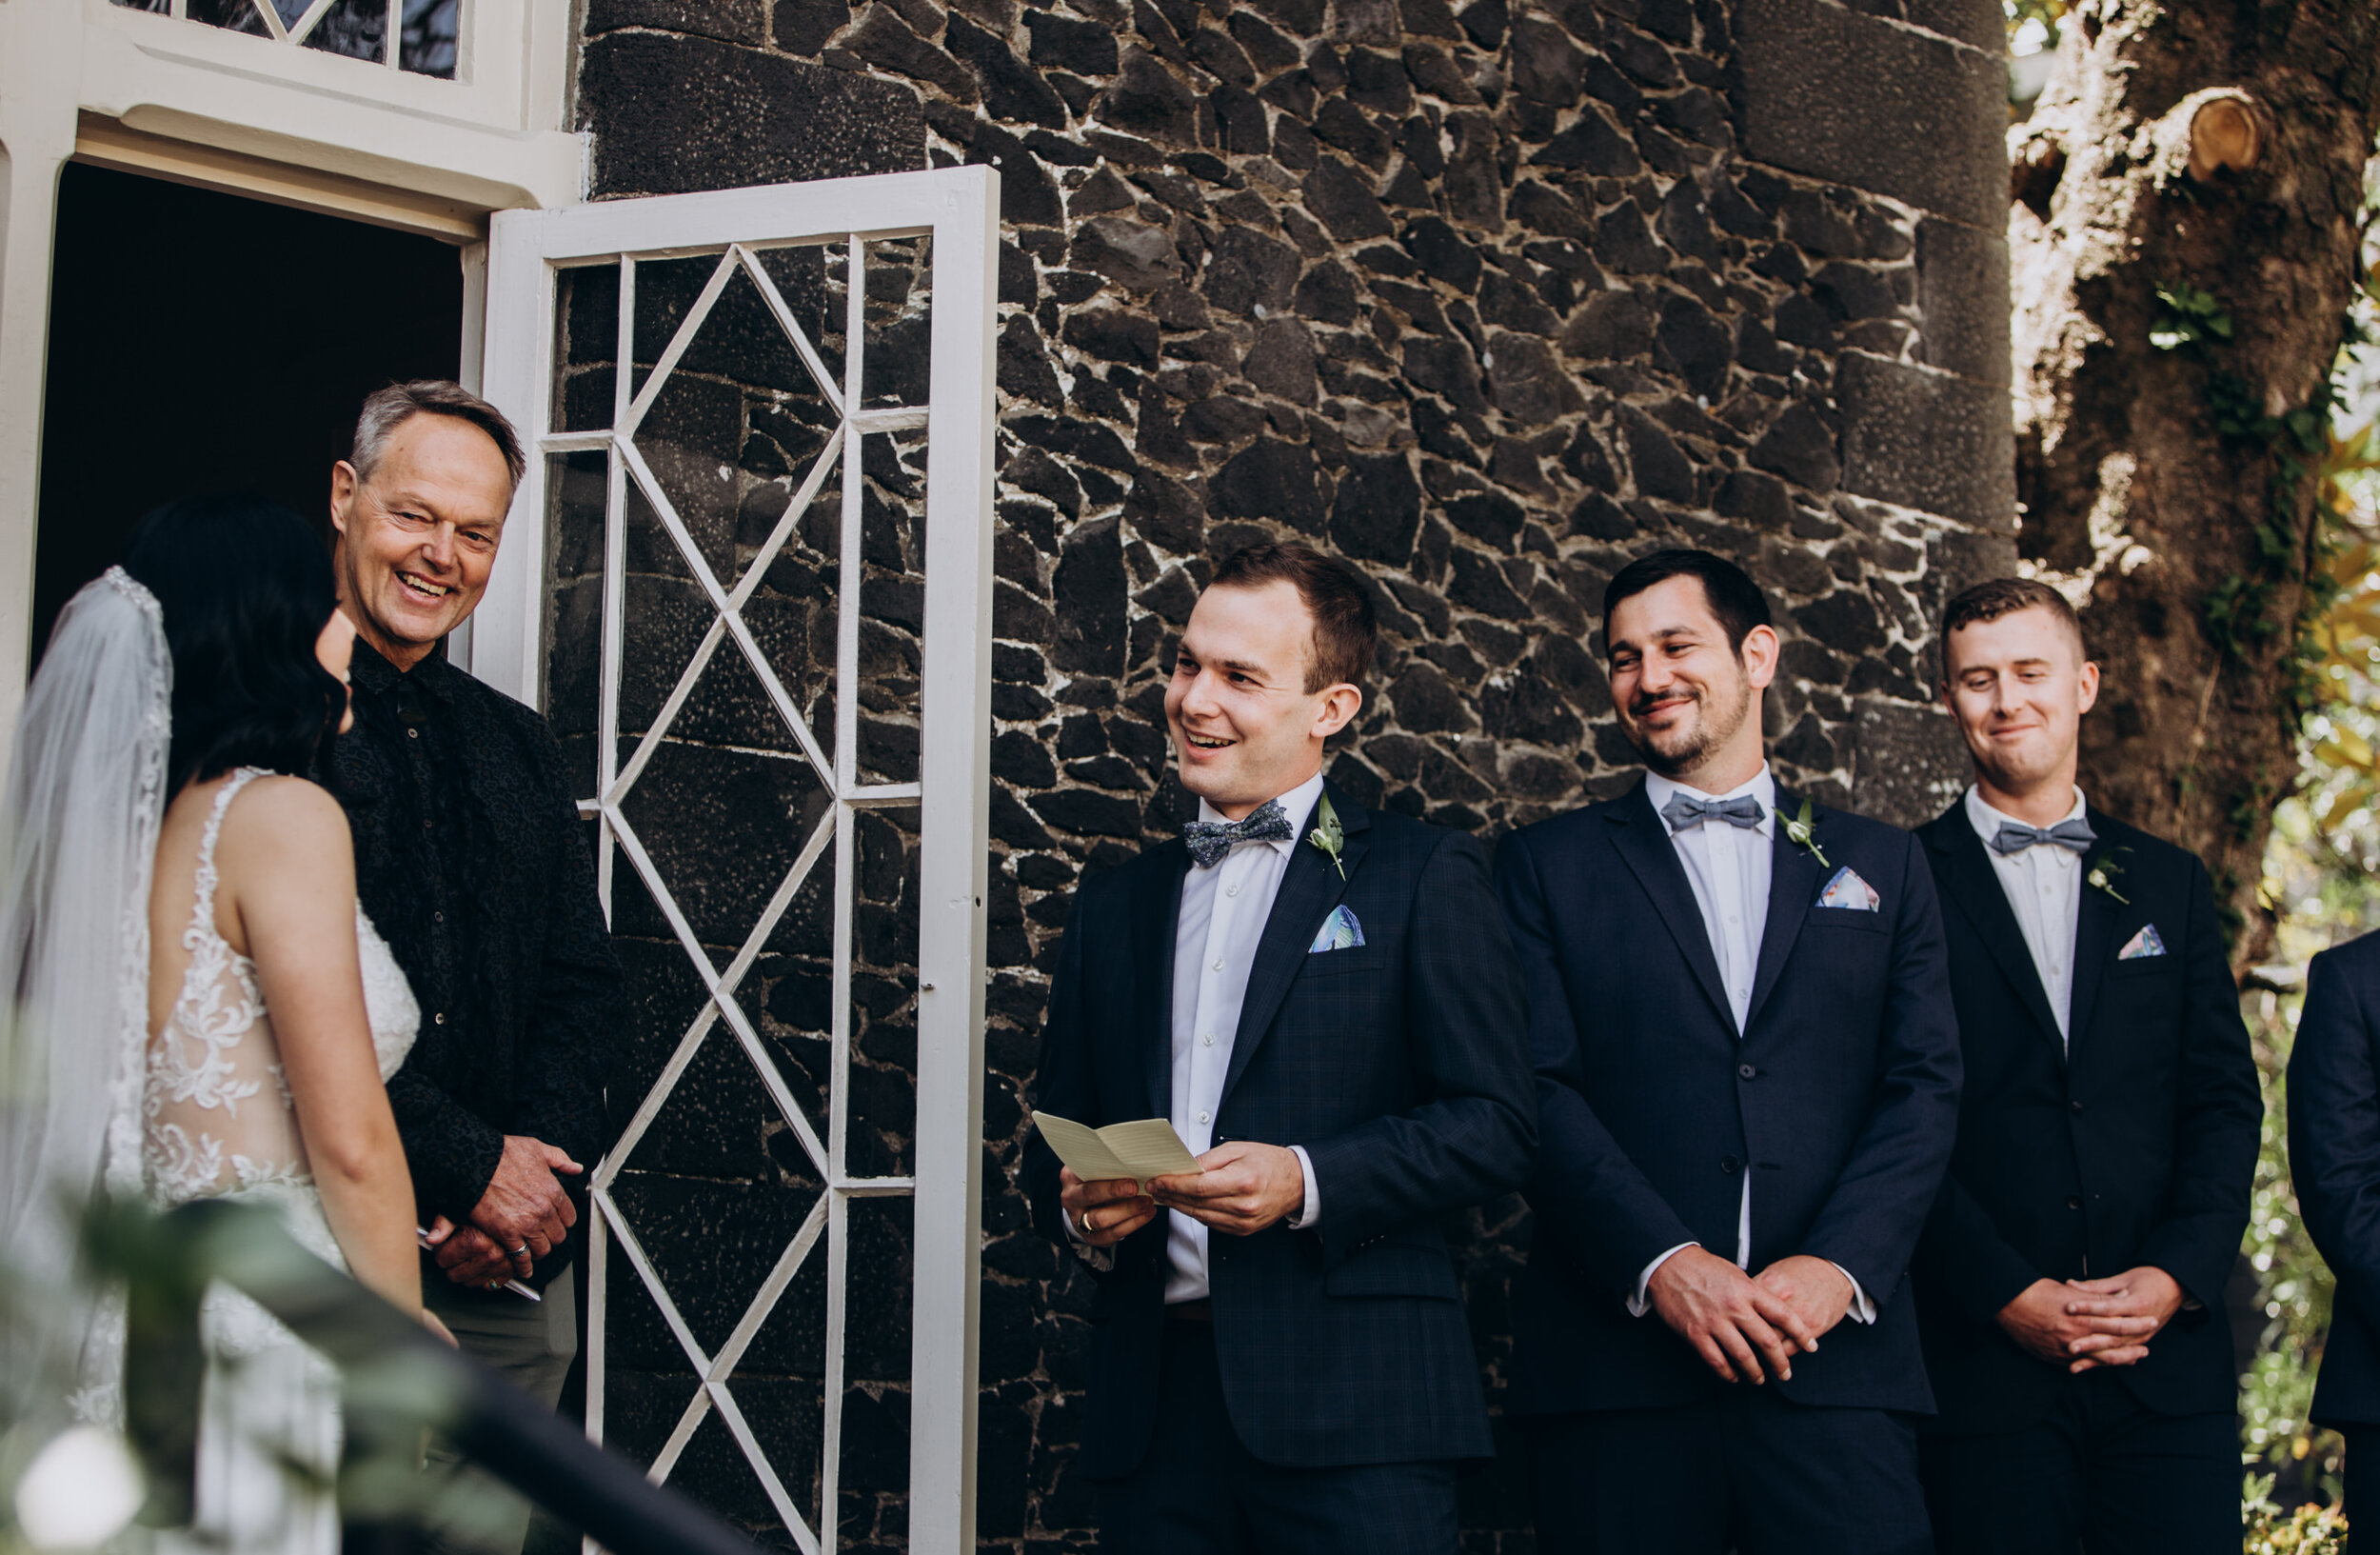 New Zealand Wedding | Parnell rose garden wedding photos | Elopement wedding photographer  